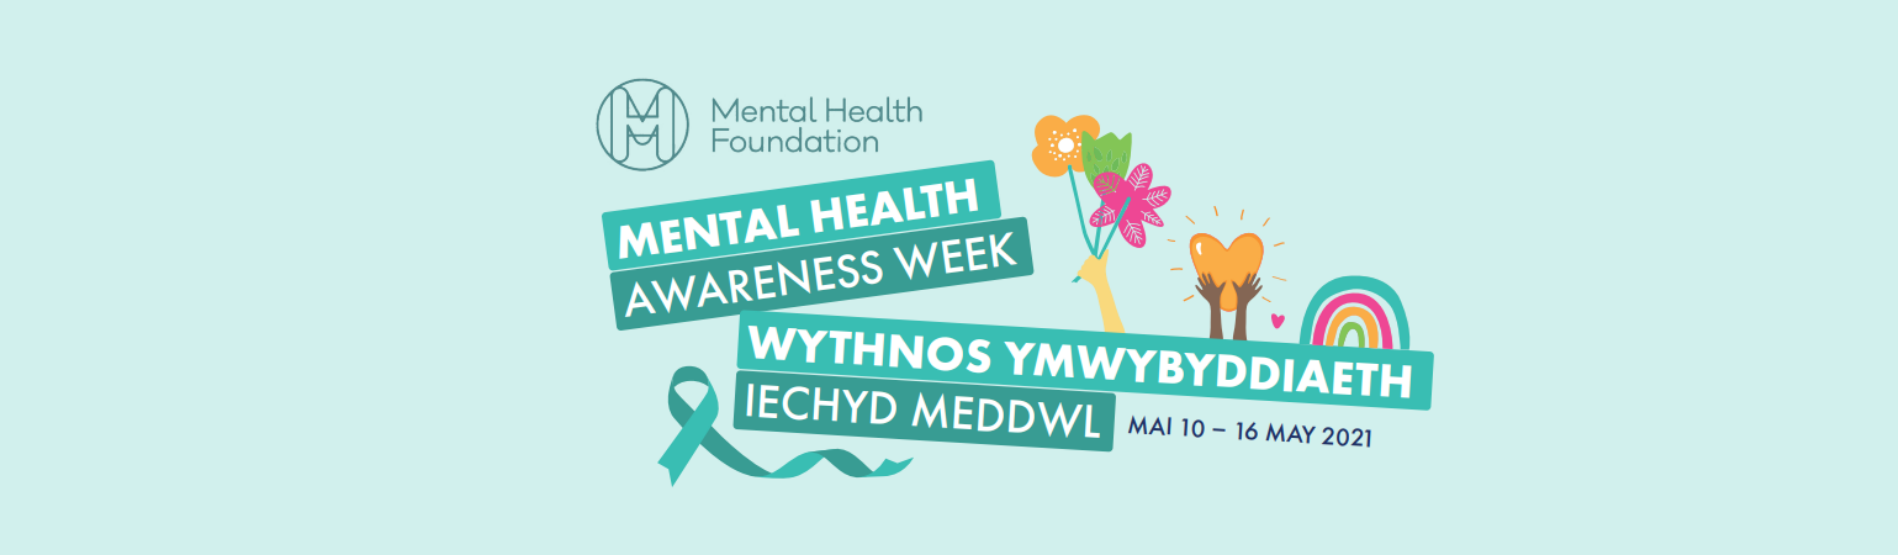 mental health awareness week 2021 banner in pale blue